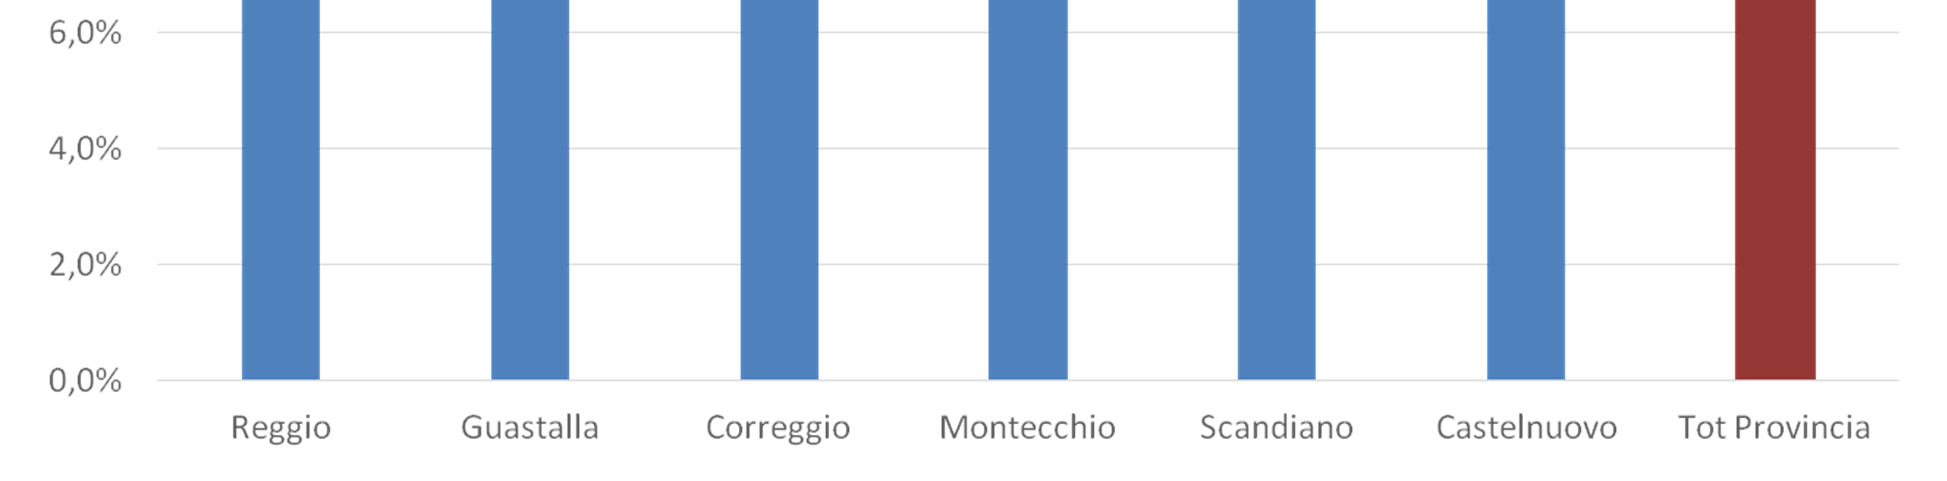 Indice di ricambio della popolazione totale nei DISTRETTI della provincia di Reggio (al 31.12.